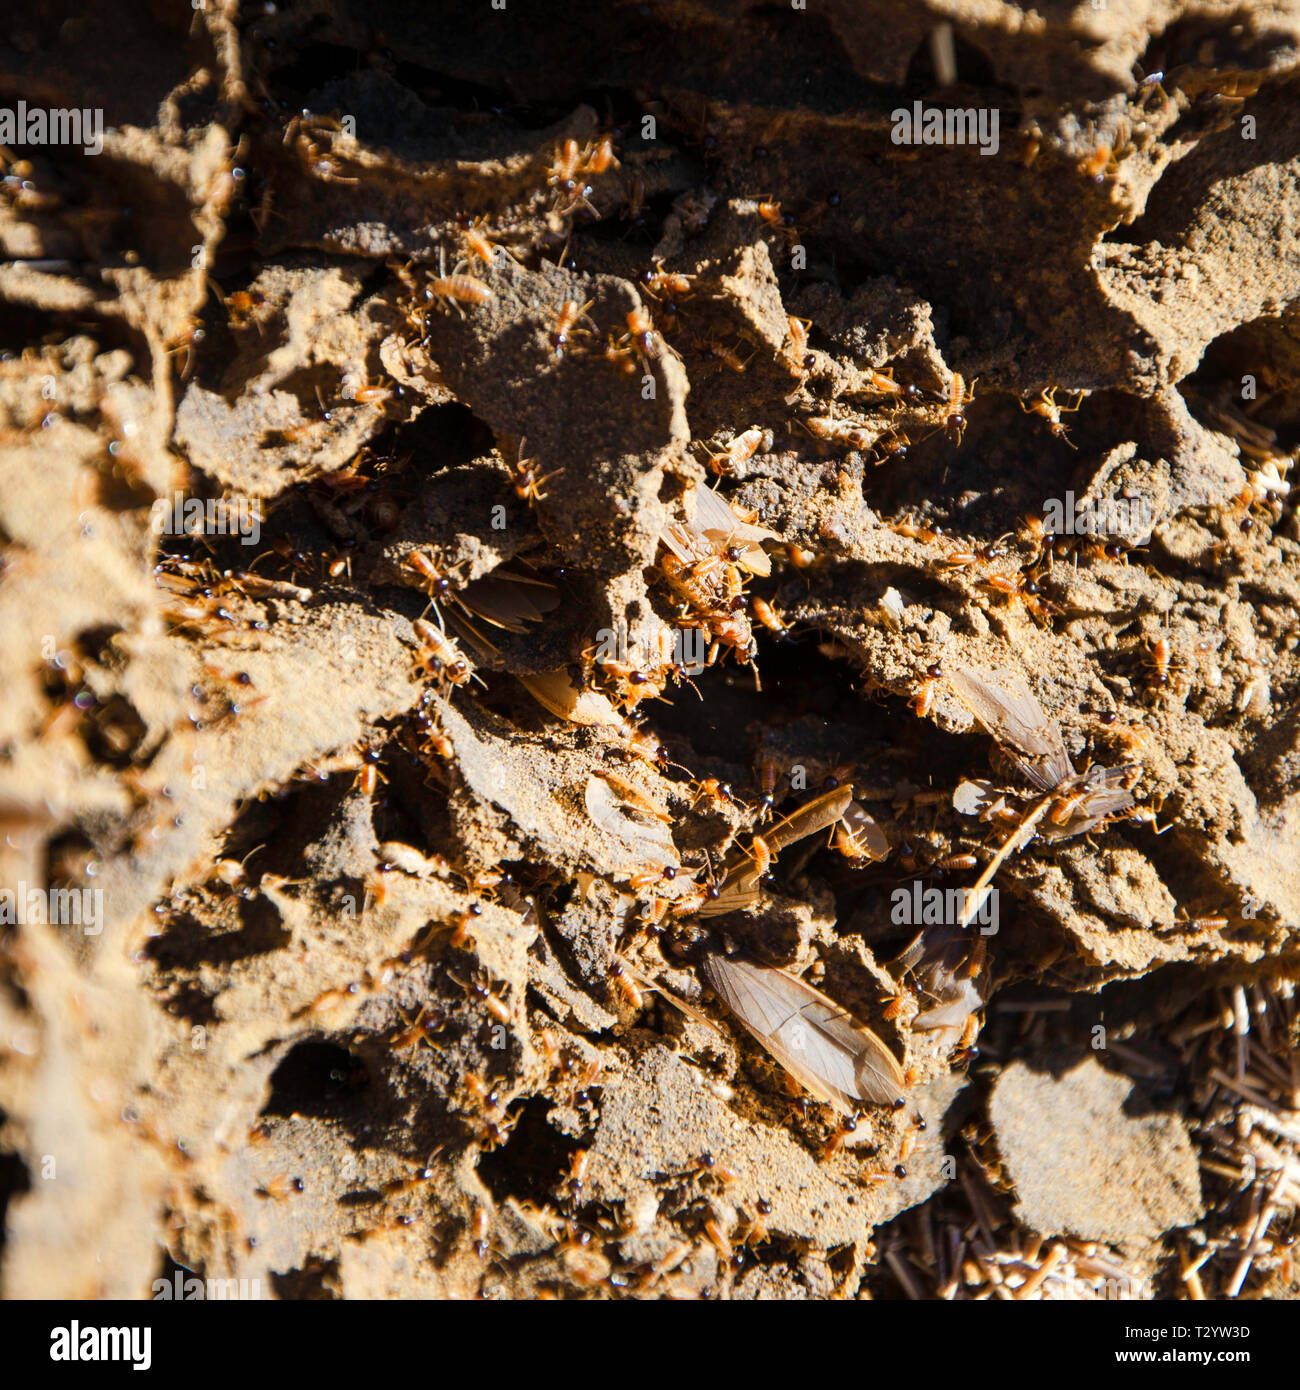 En el interior de un Termitero, mostrando las termitas y la estructura del montículo Foto de stock